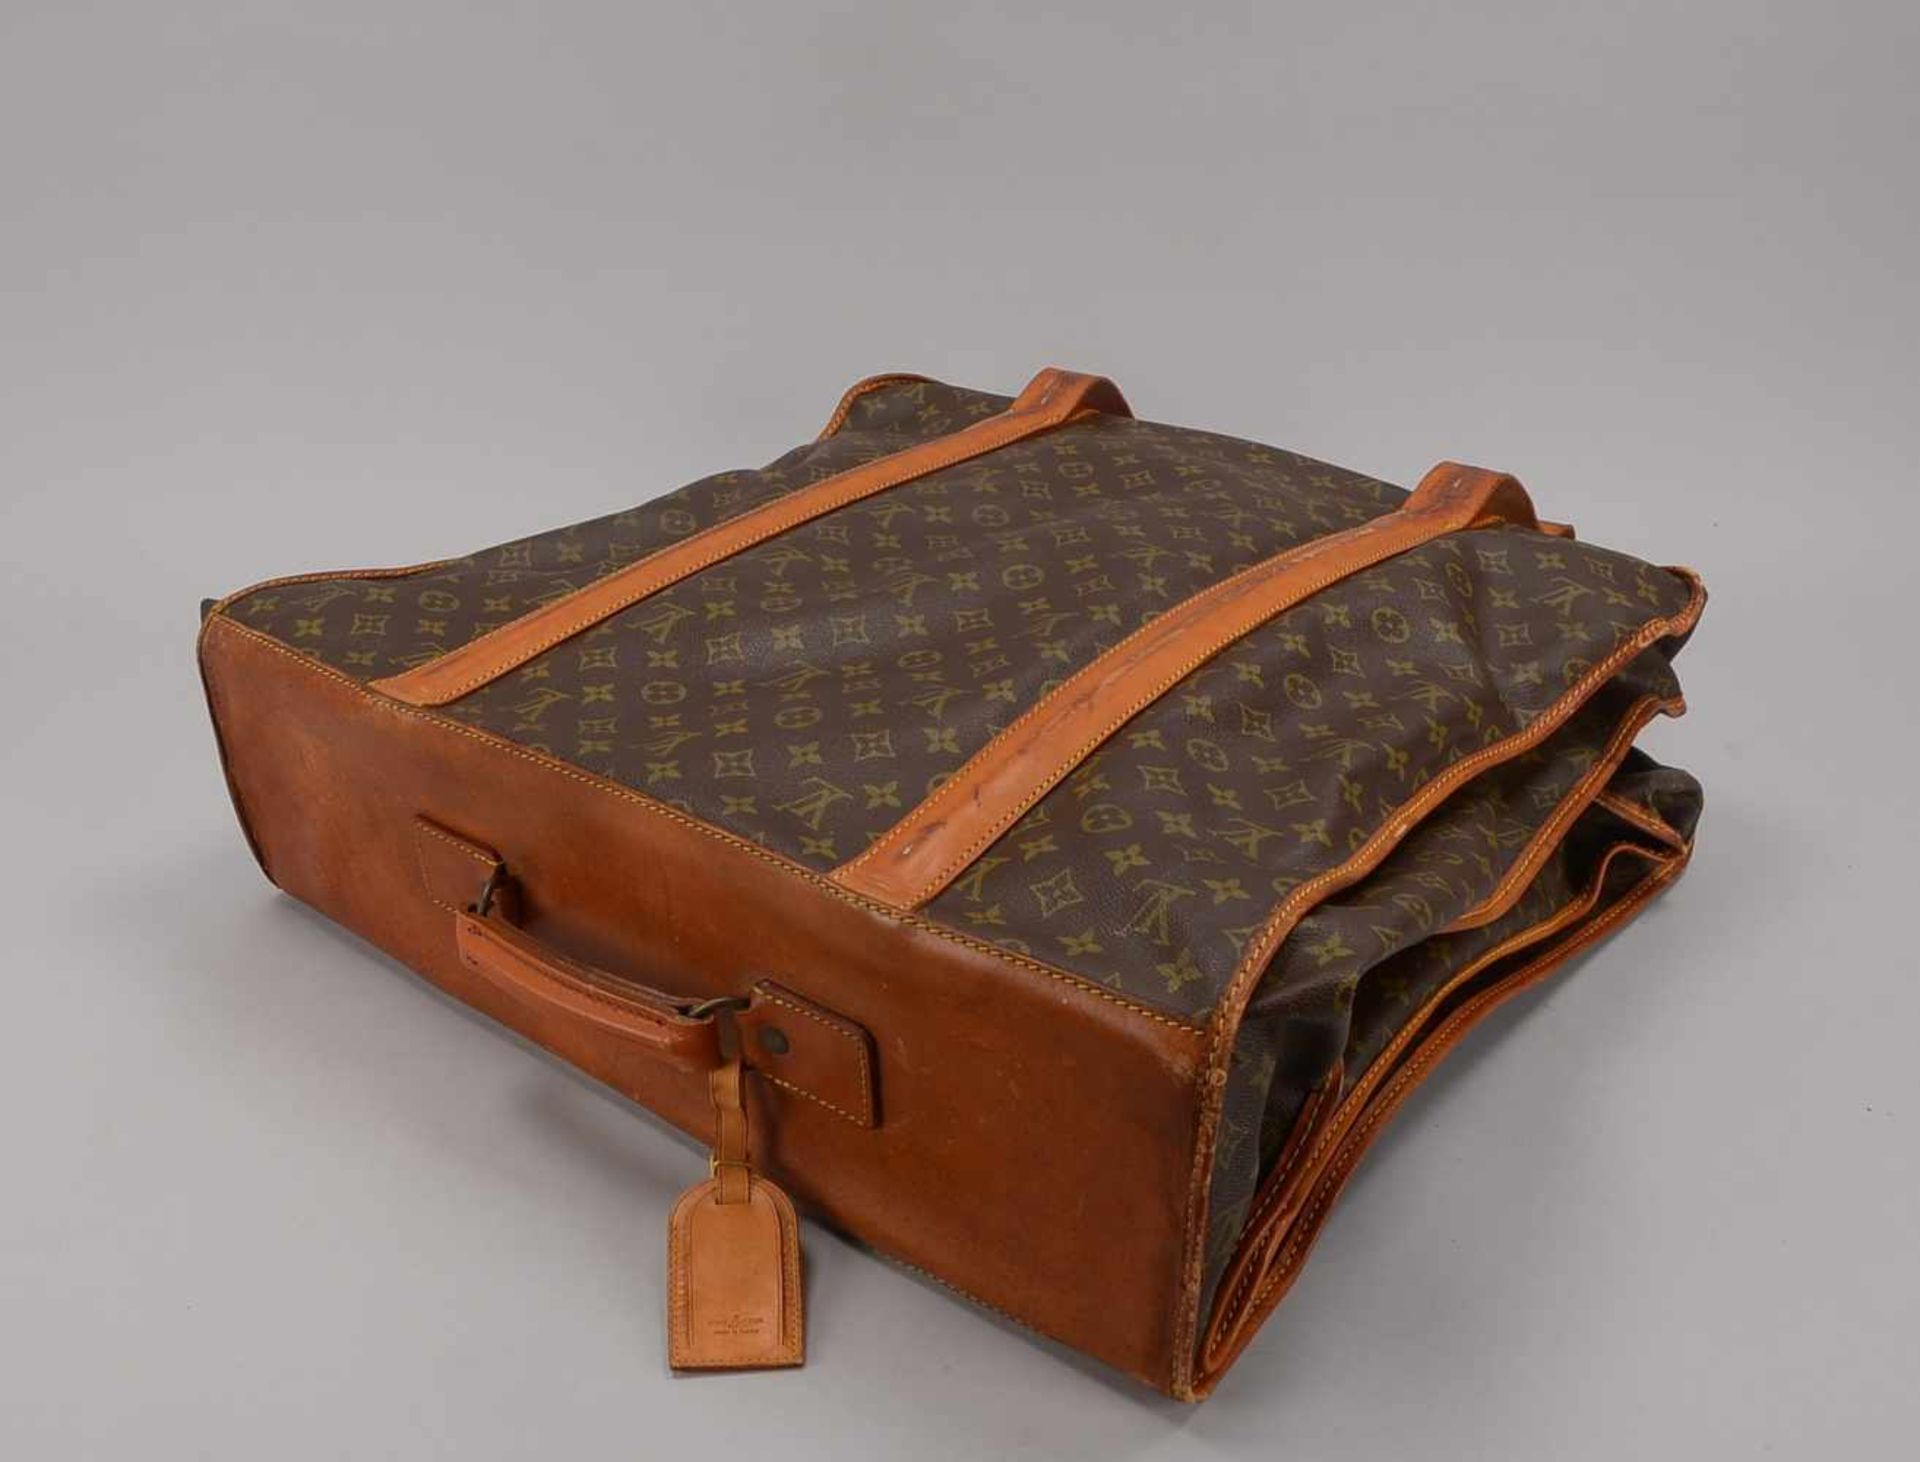 Reise-Kleidersack/Anzugsack, Louis Vuitton, innen mit Aufhängevorrichtung/mit 4x Kleiderbügeln, dazu